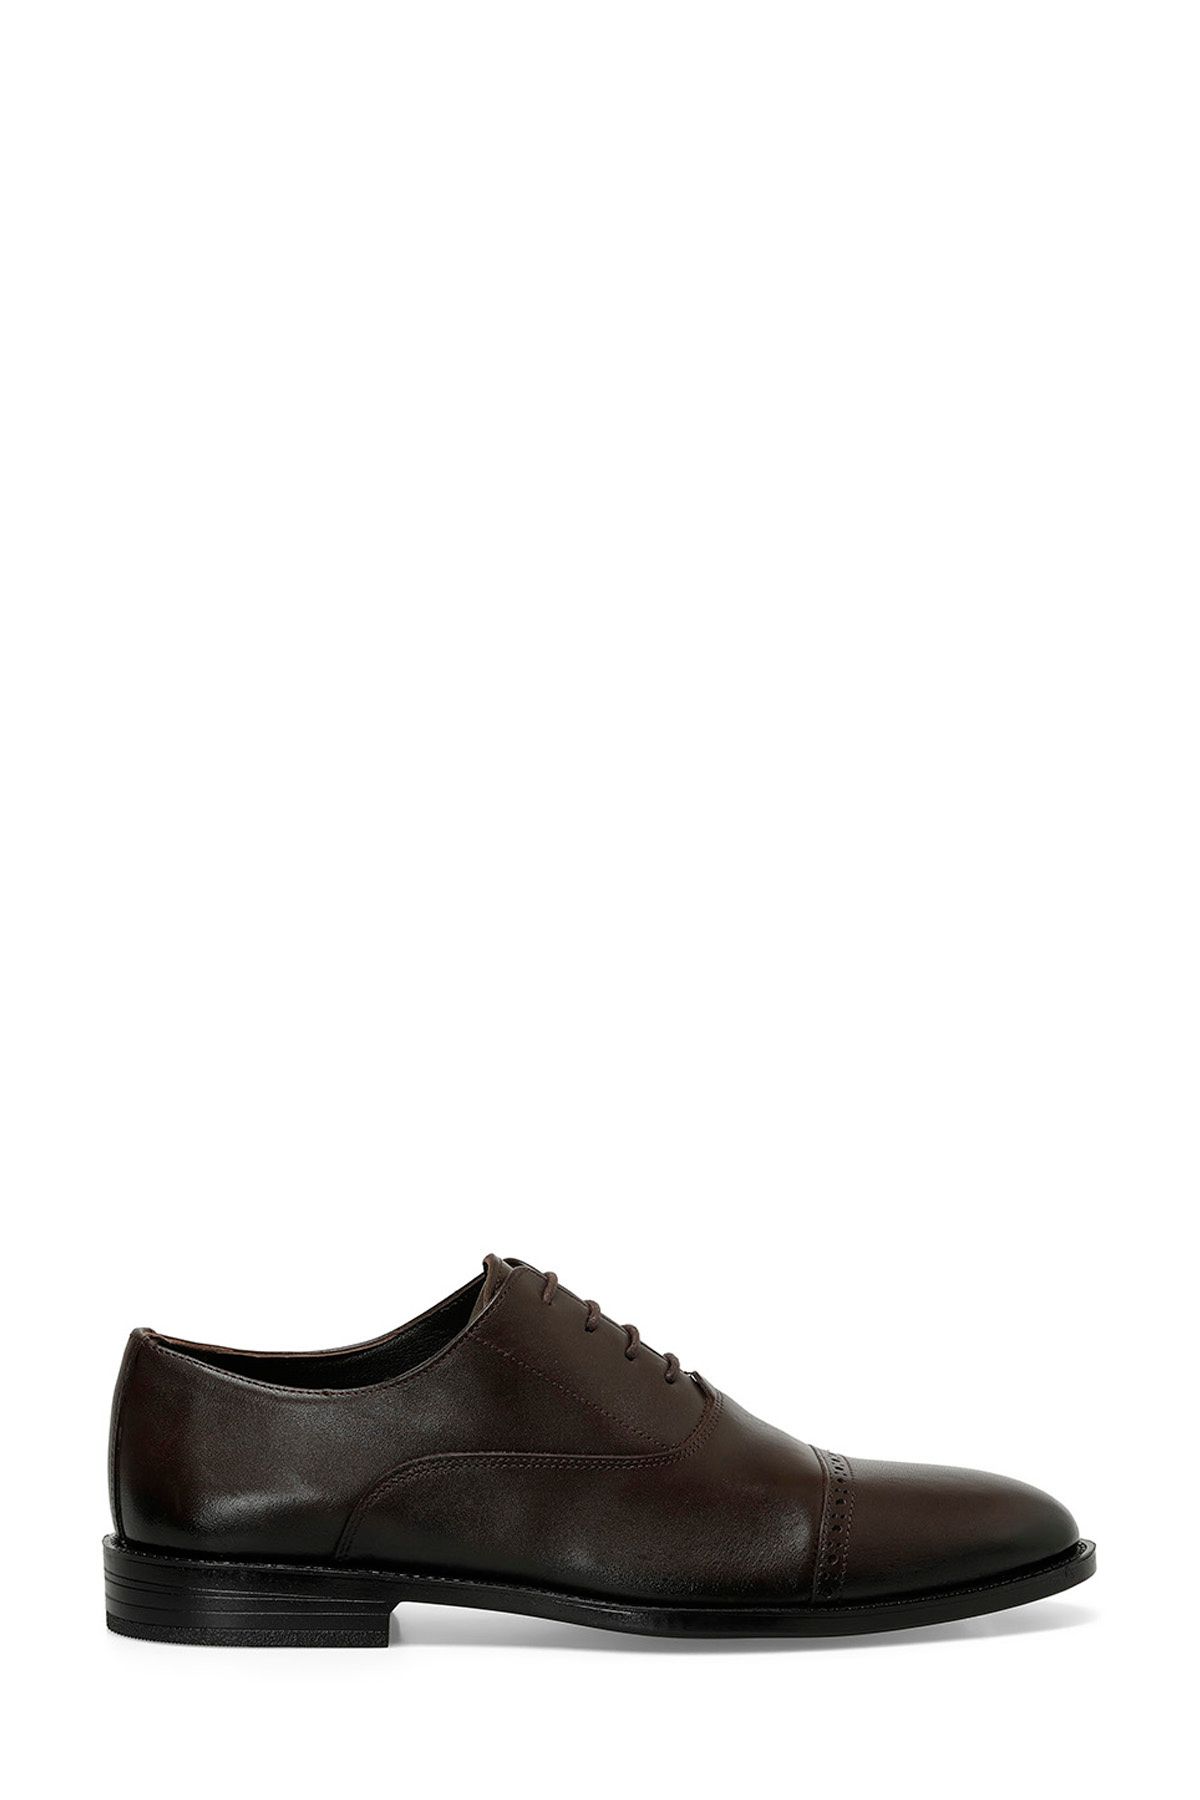 İnci INCI MINOR 4FX Kahverengi Erkek Klasik Ayakkabı